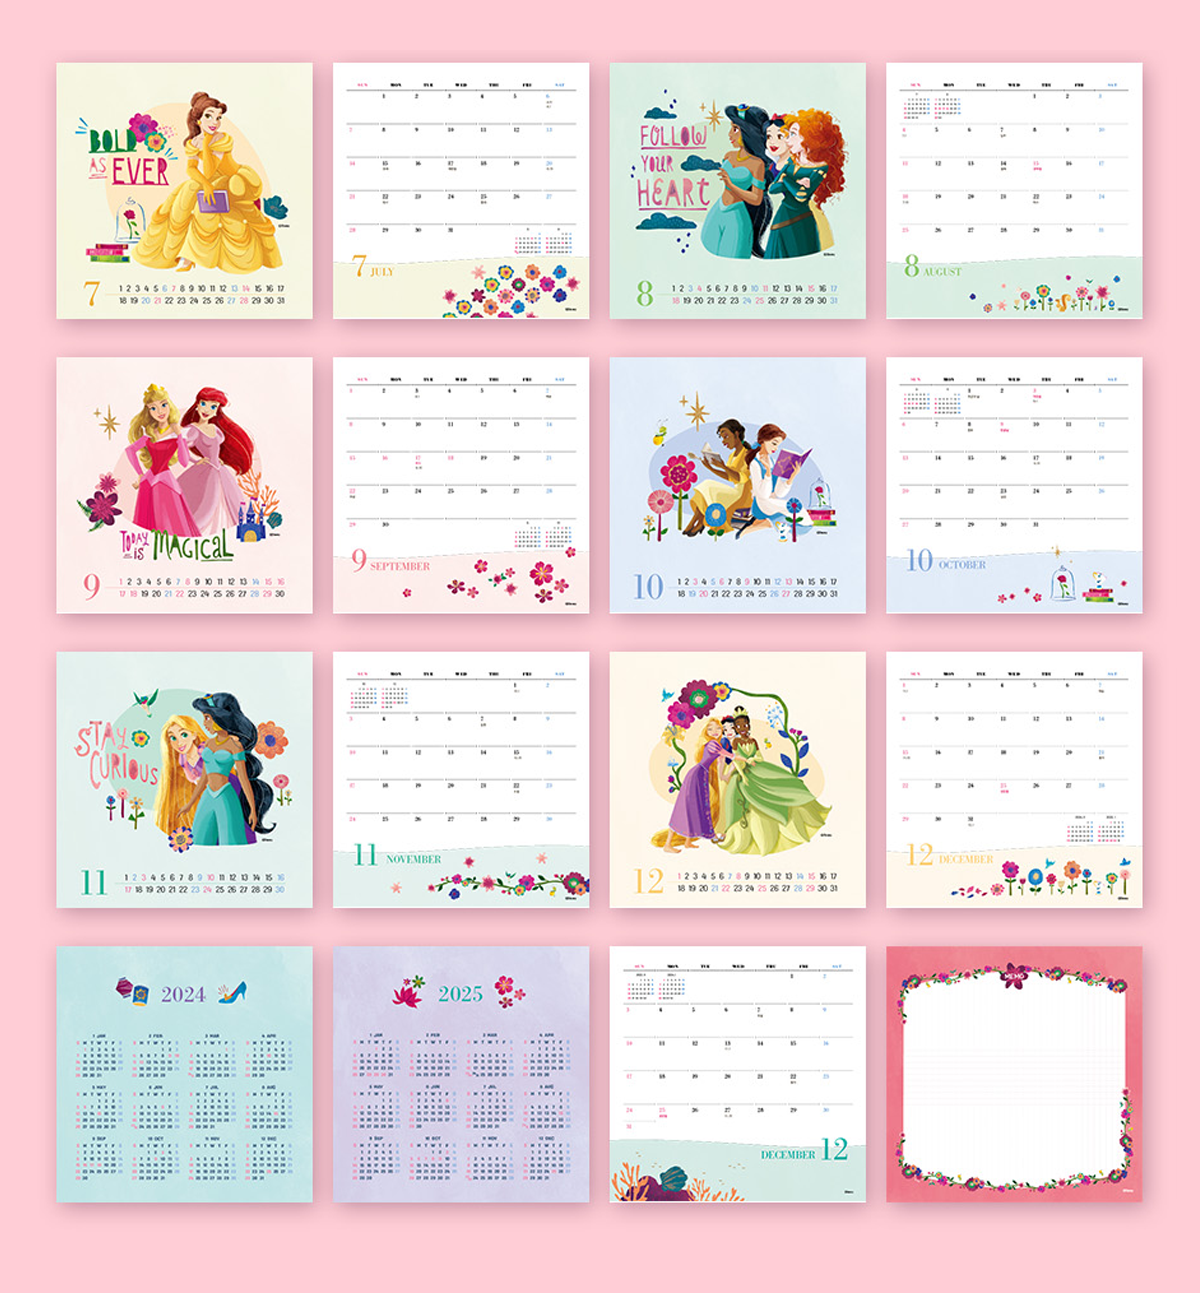 2024 Disney Princess Desk Calendar